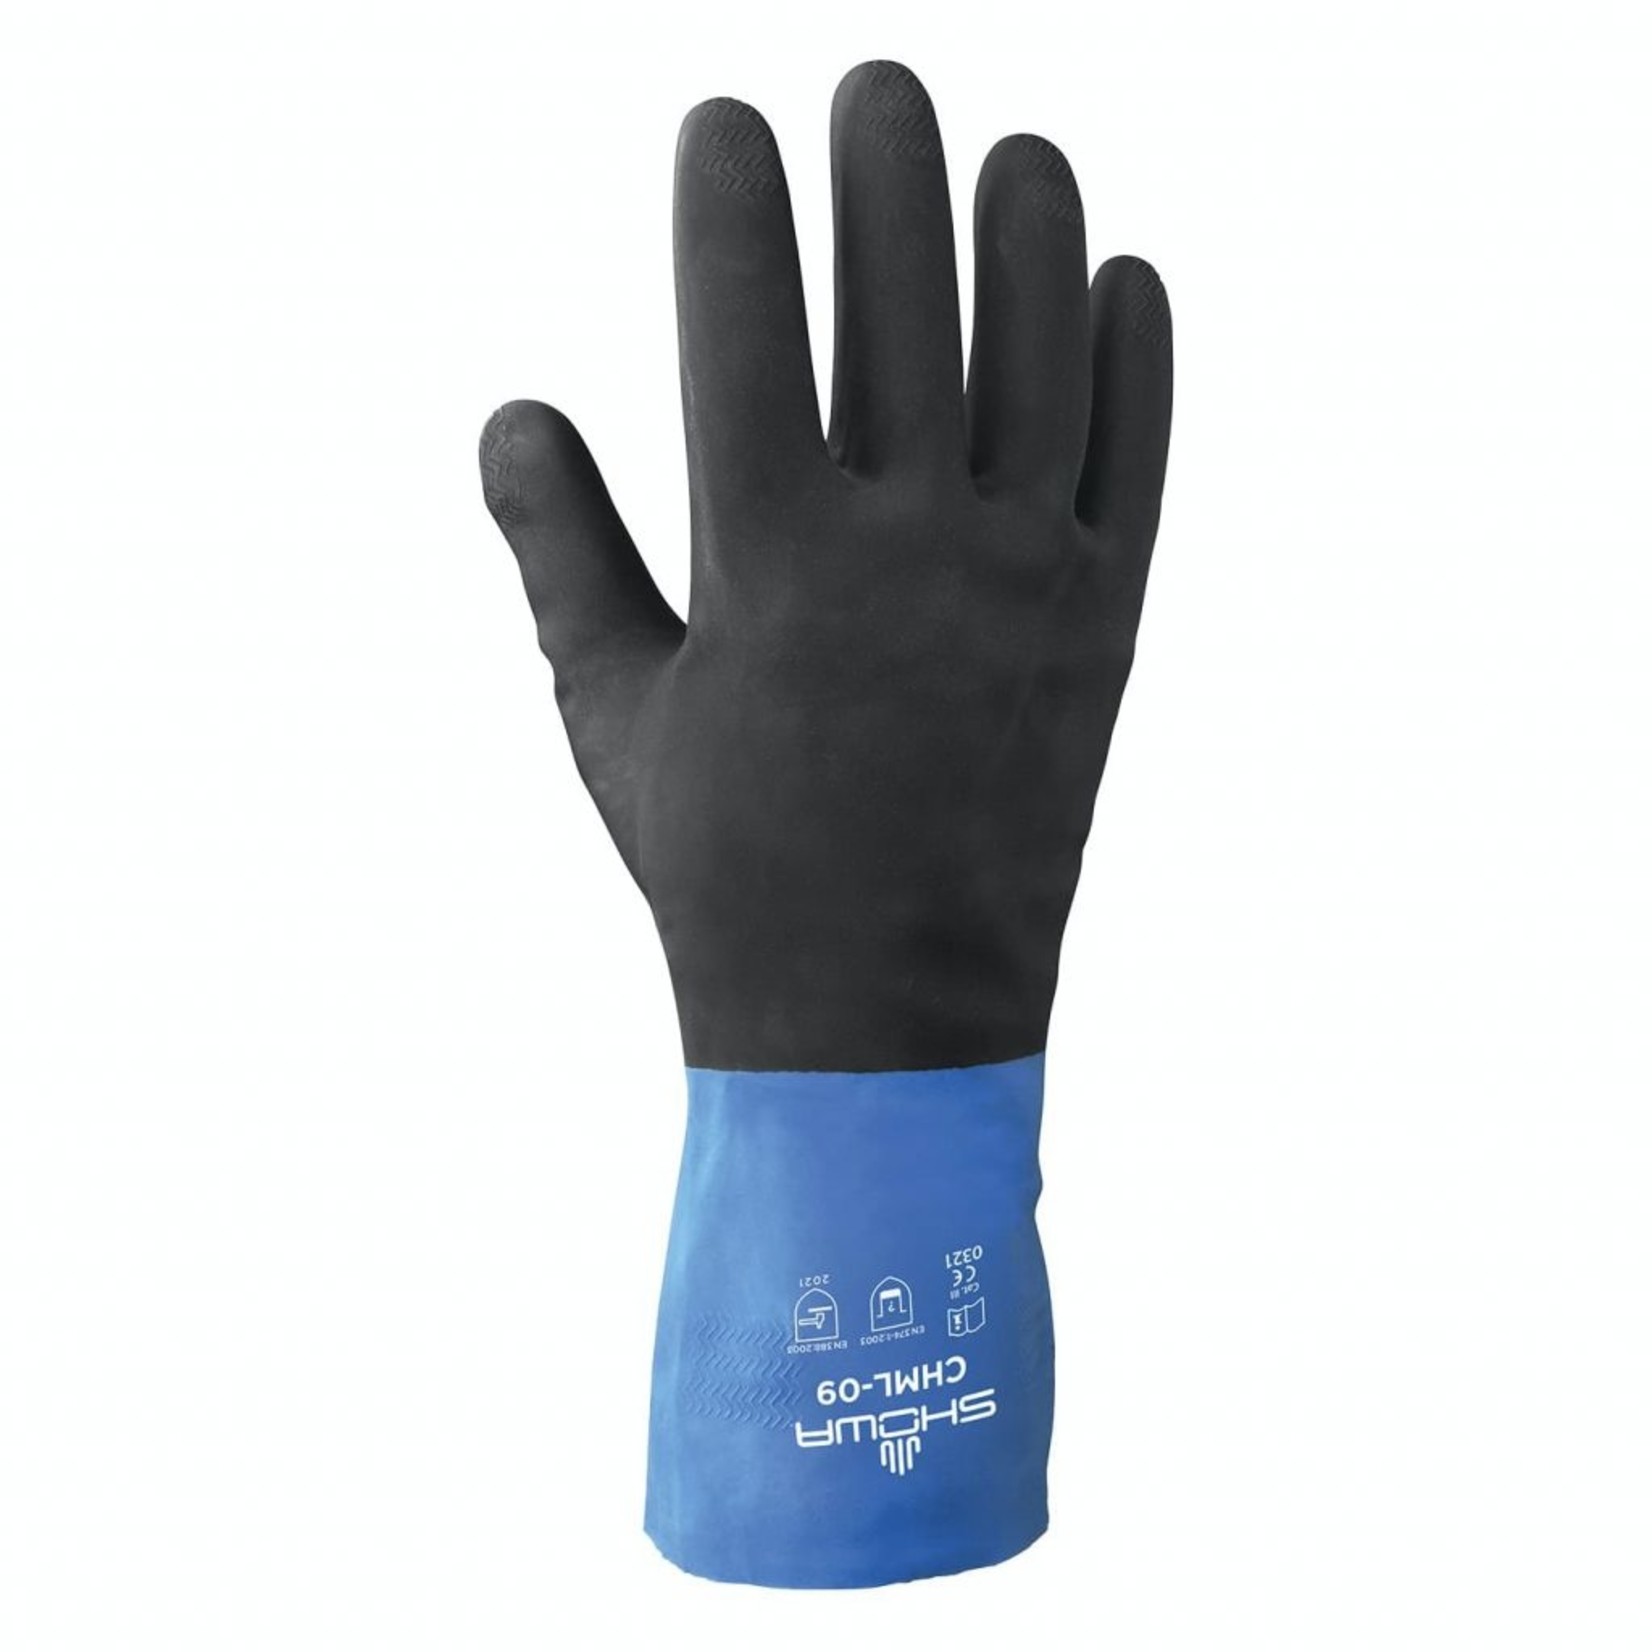 Showa 845 Neoprene Gloves Black/Blue (12 Count)